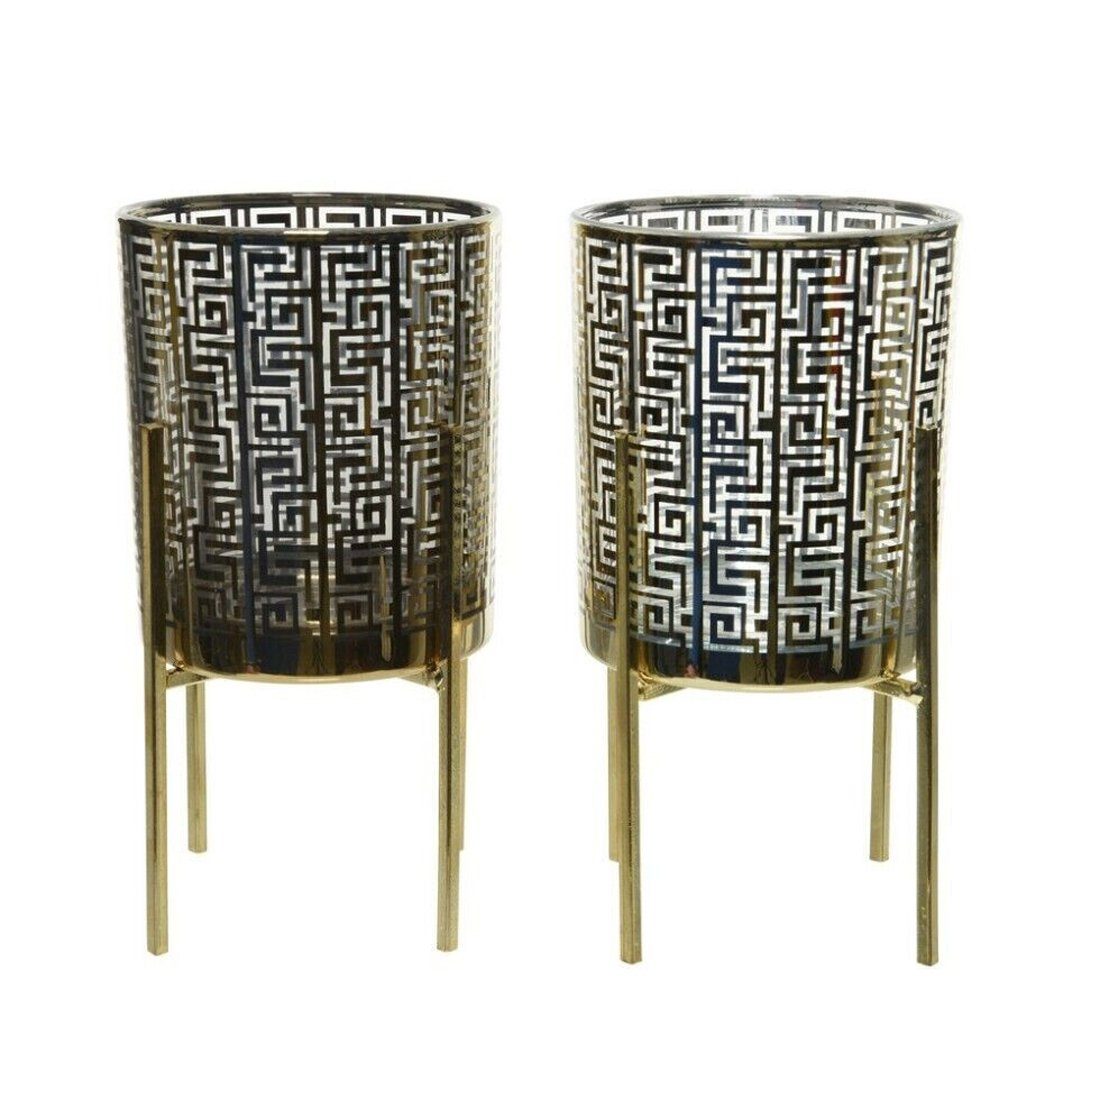 Annimuck Windlicht 2 x Teelichthalter auf Metallgestell H17 D9,4 m schwarz  gold Windlicht (2 St)